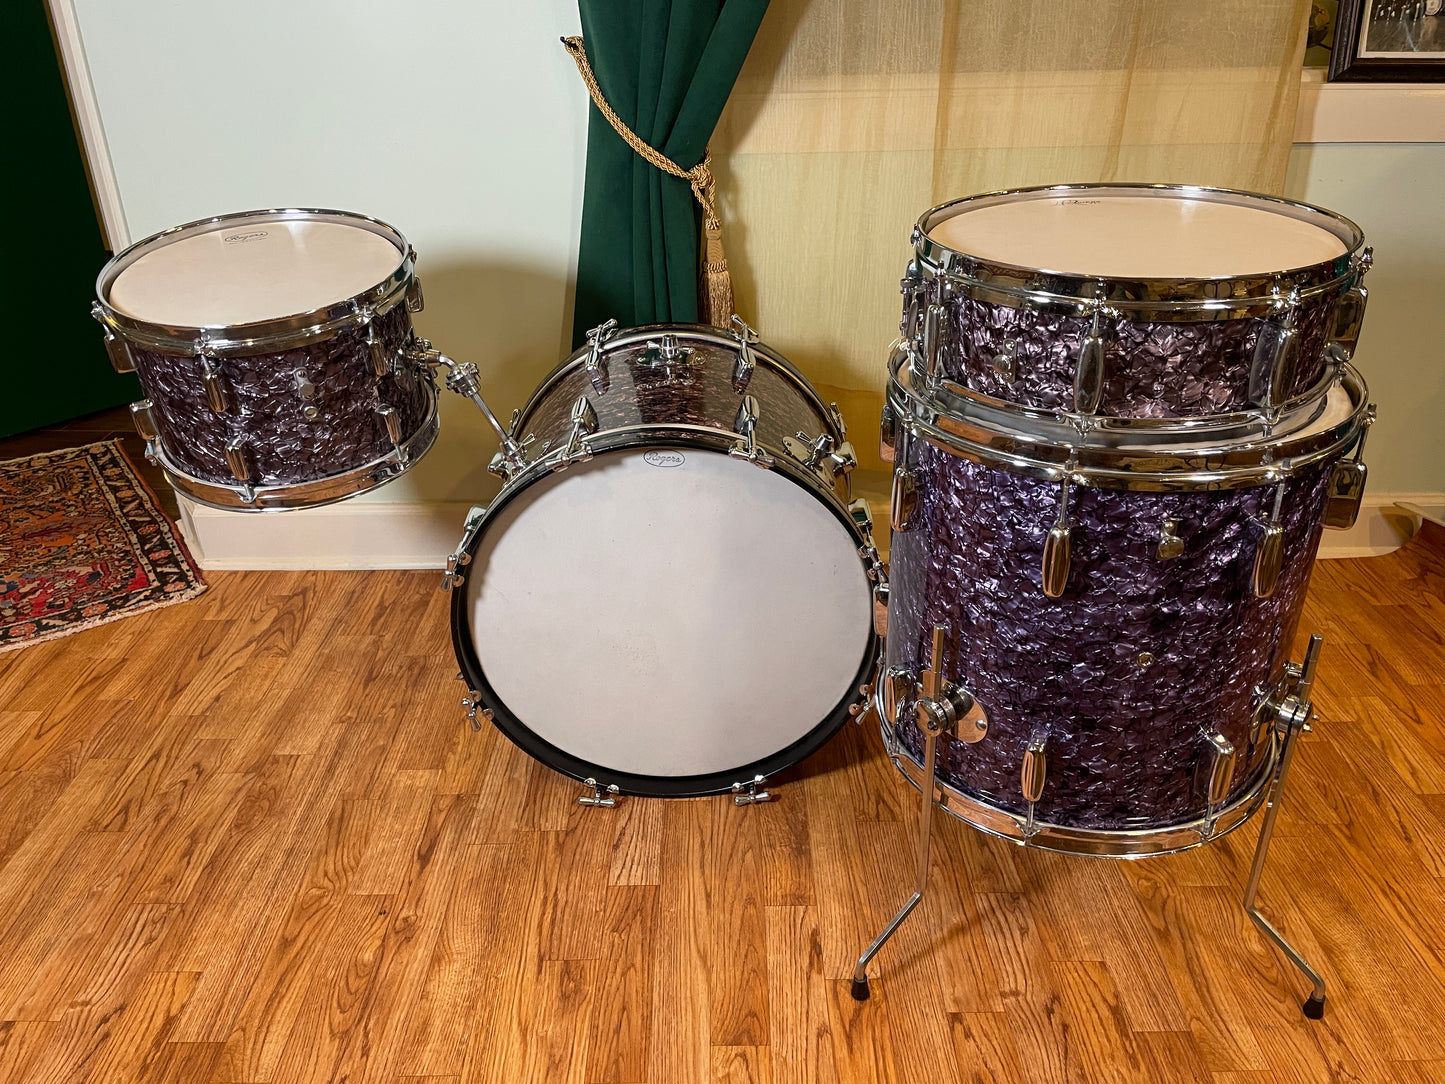 1959 Rogers Holiday Drum Set Purple Diamond Pearl 20/12/16/5x14